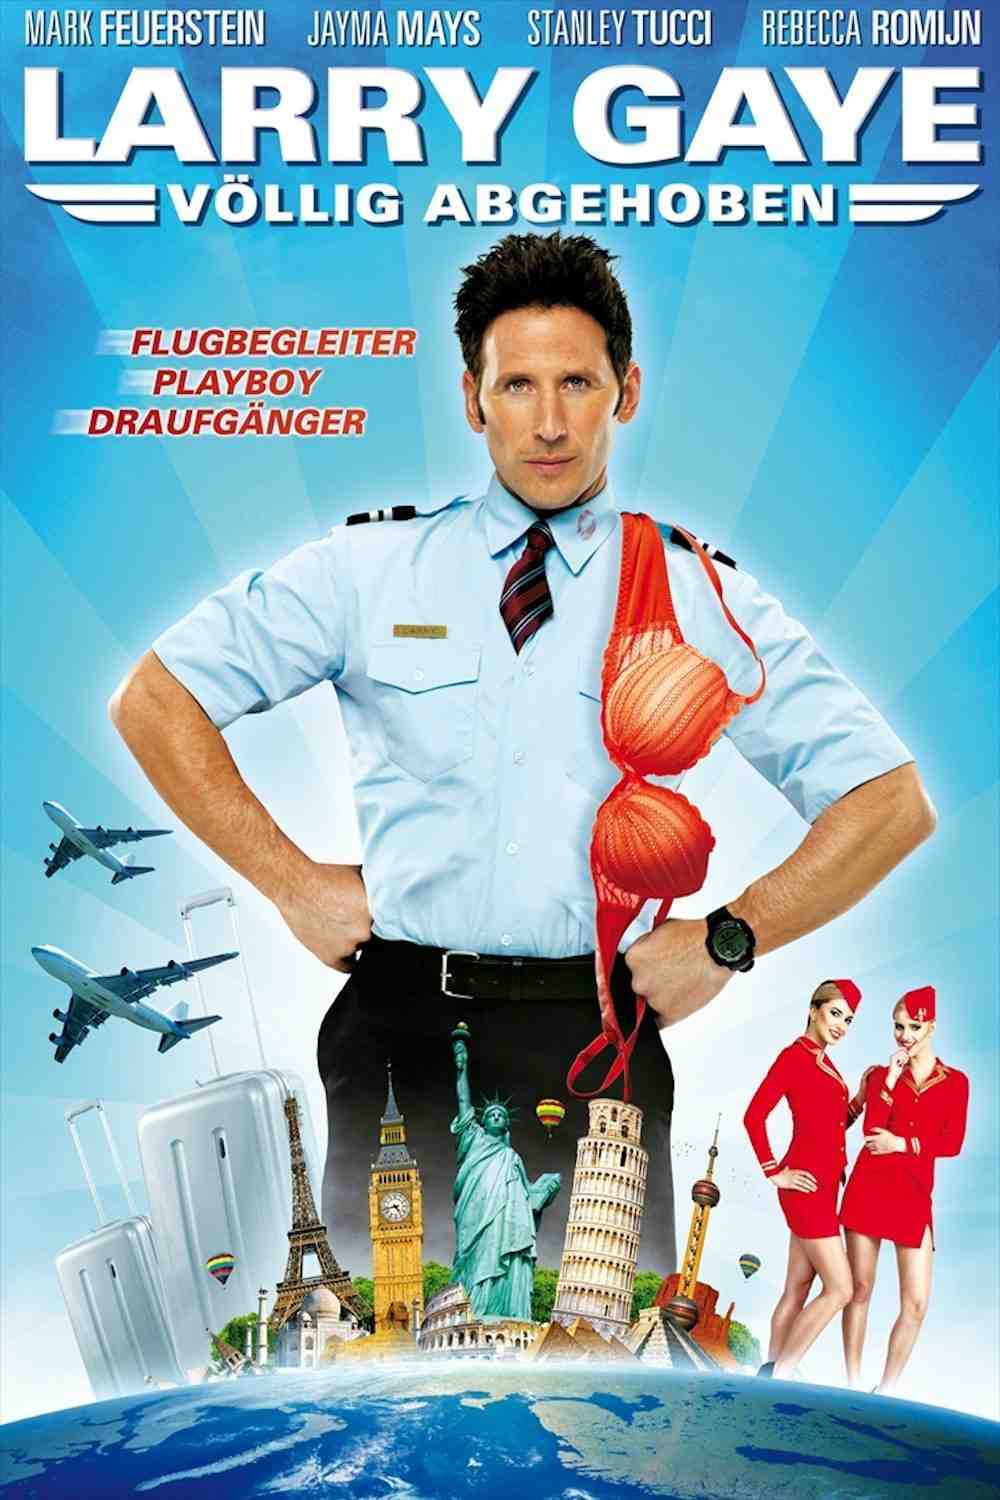 Larry gaye renegade male flight attendant